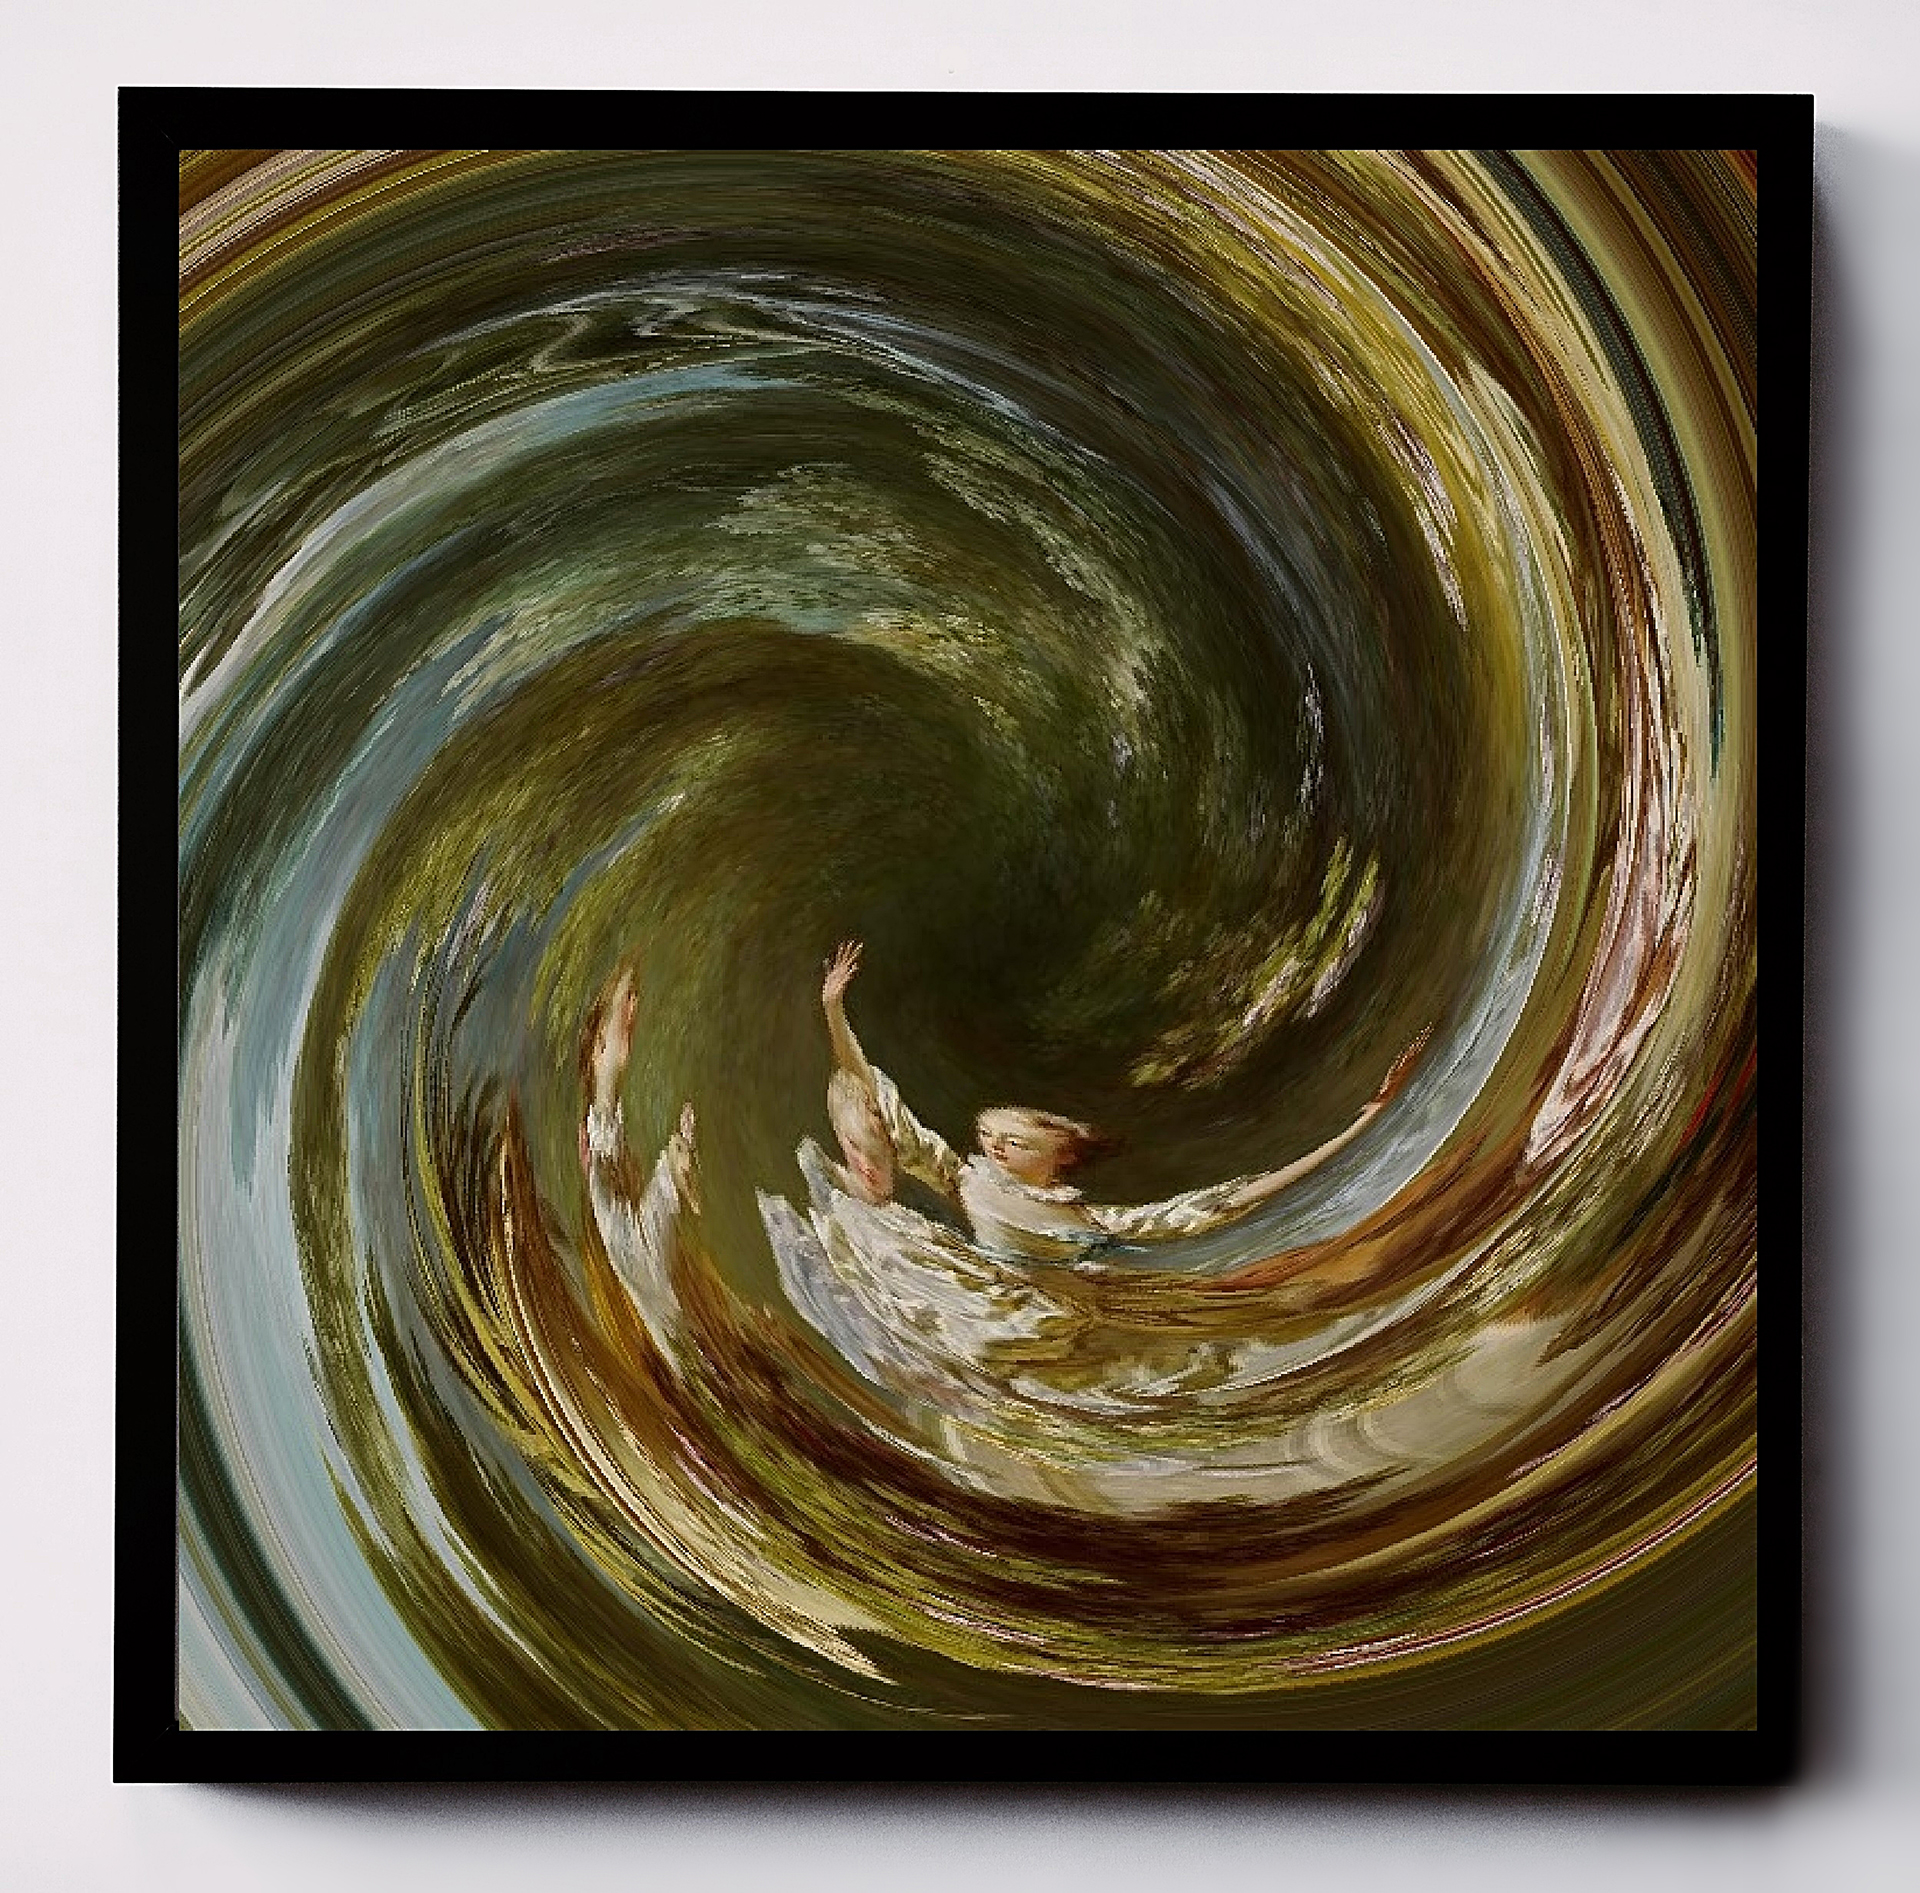 Kolorowa kompozycja graficzna przetwarzająca figuratywny obraz rokokowy, sugerująca wir oraz ruch spiralny.